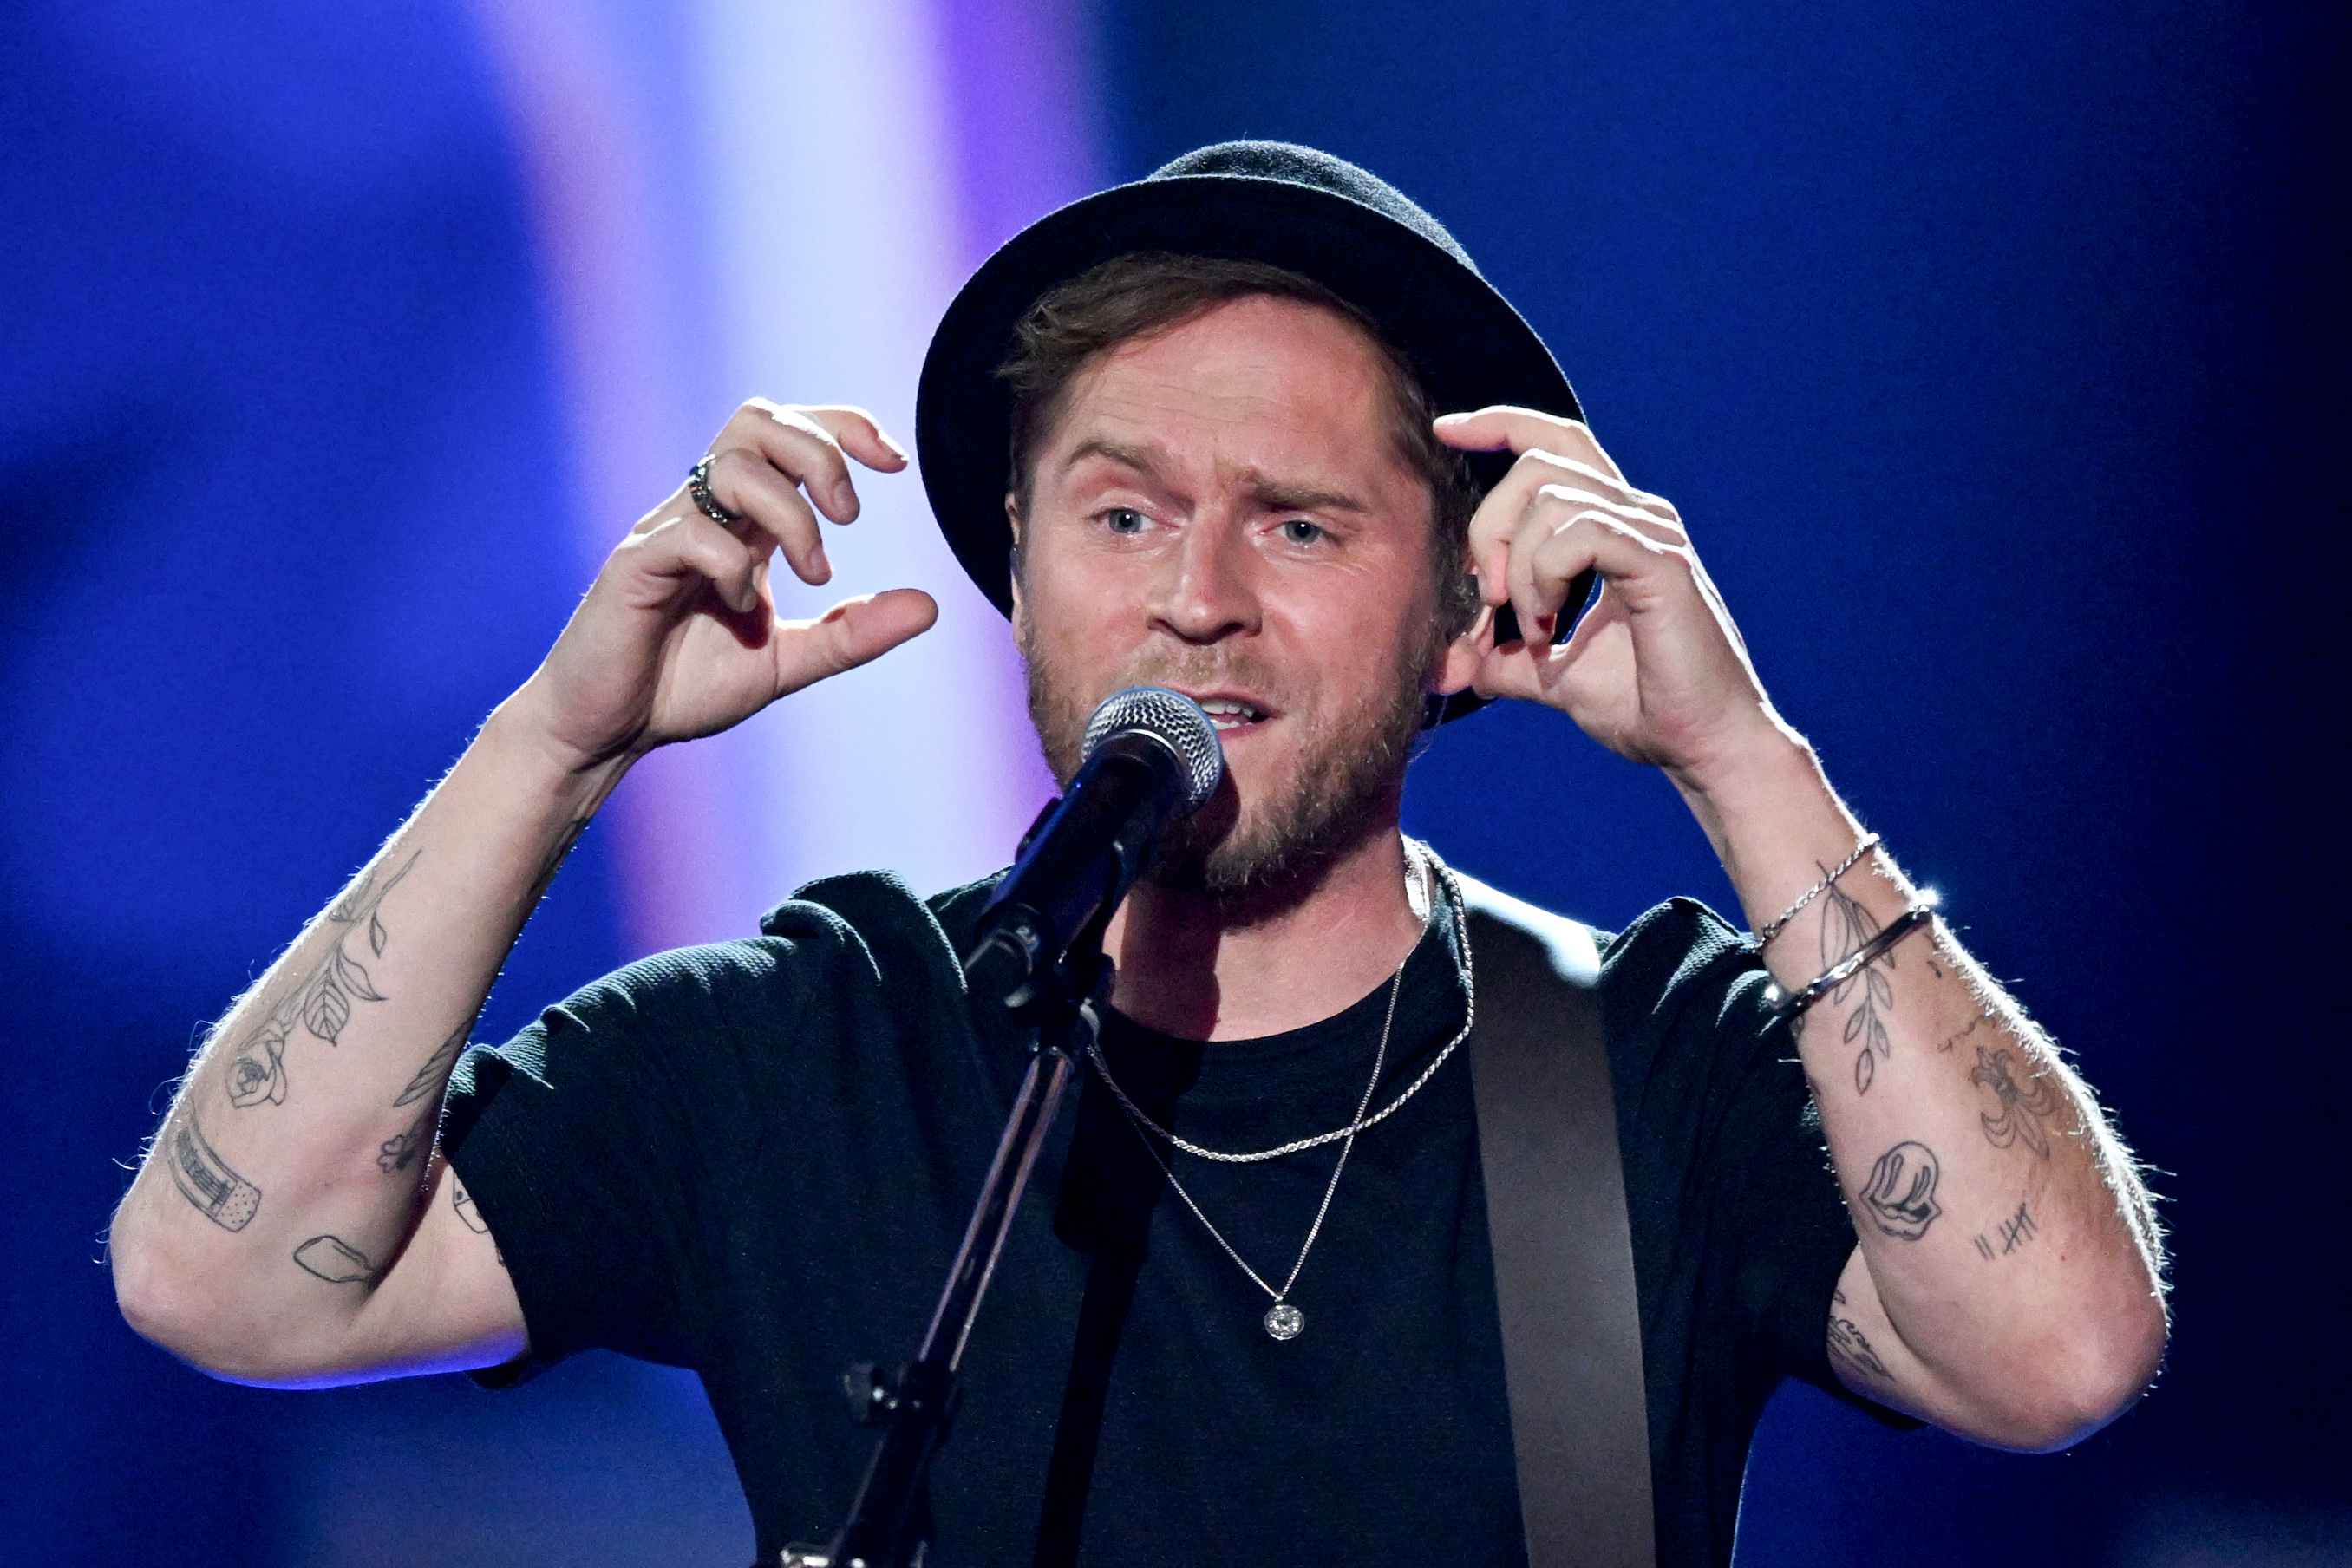 Sänger Johannes Oerding singt bei der Verleihung des Medienpreises "Goldene Henne", 2023 | Quelle: Getty Images